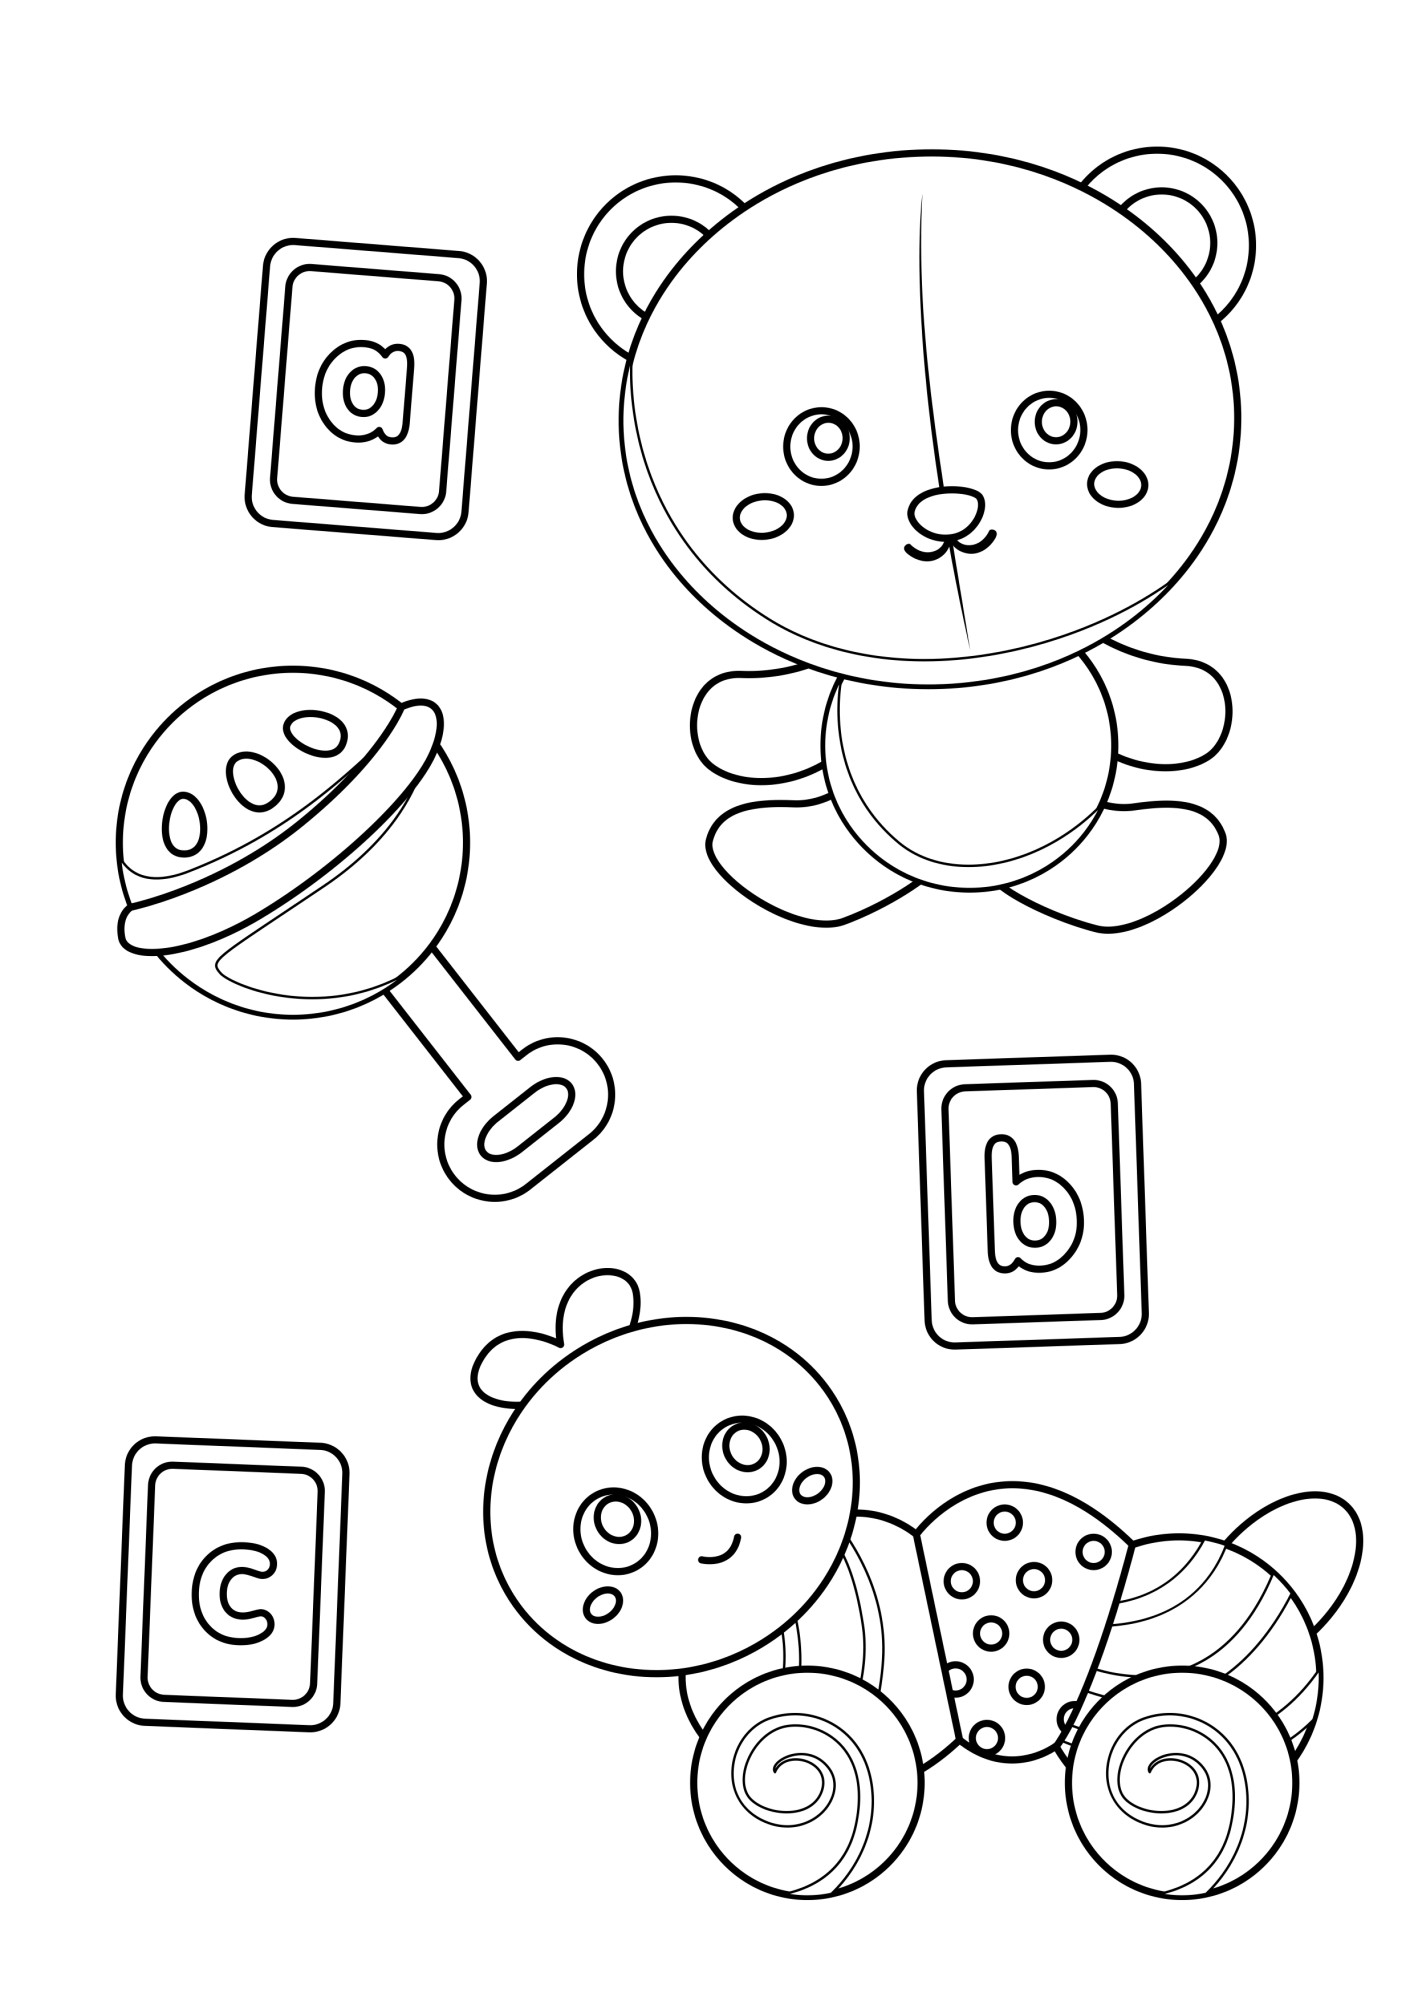 Раскраска для детей: игрушки для малышей: медвежонок, погремушка, карточки, гусеница на колесах